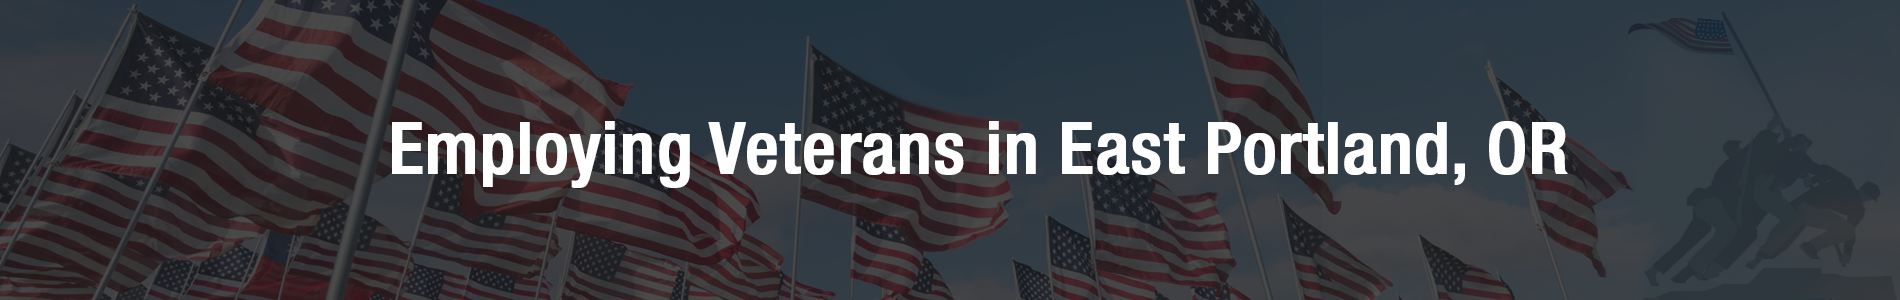 Express East Portland - Employing Veterans